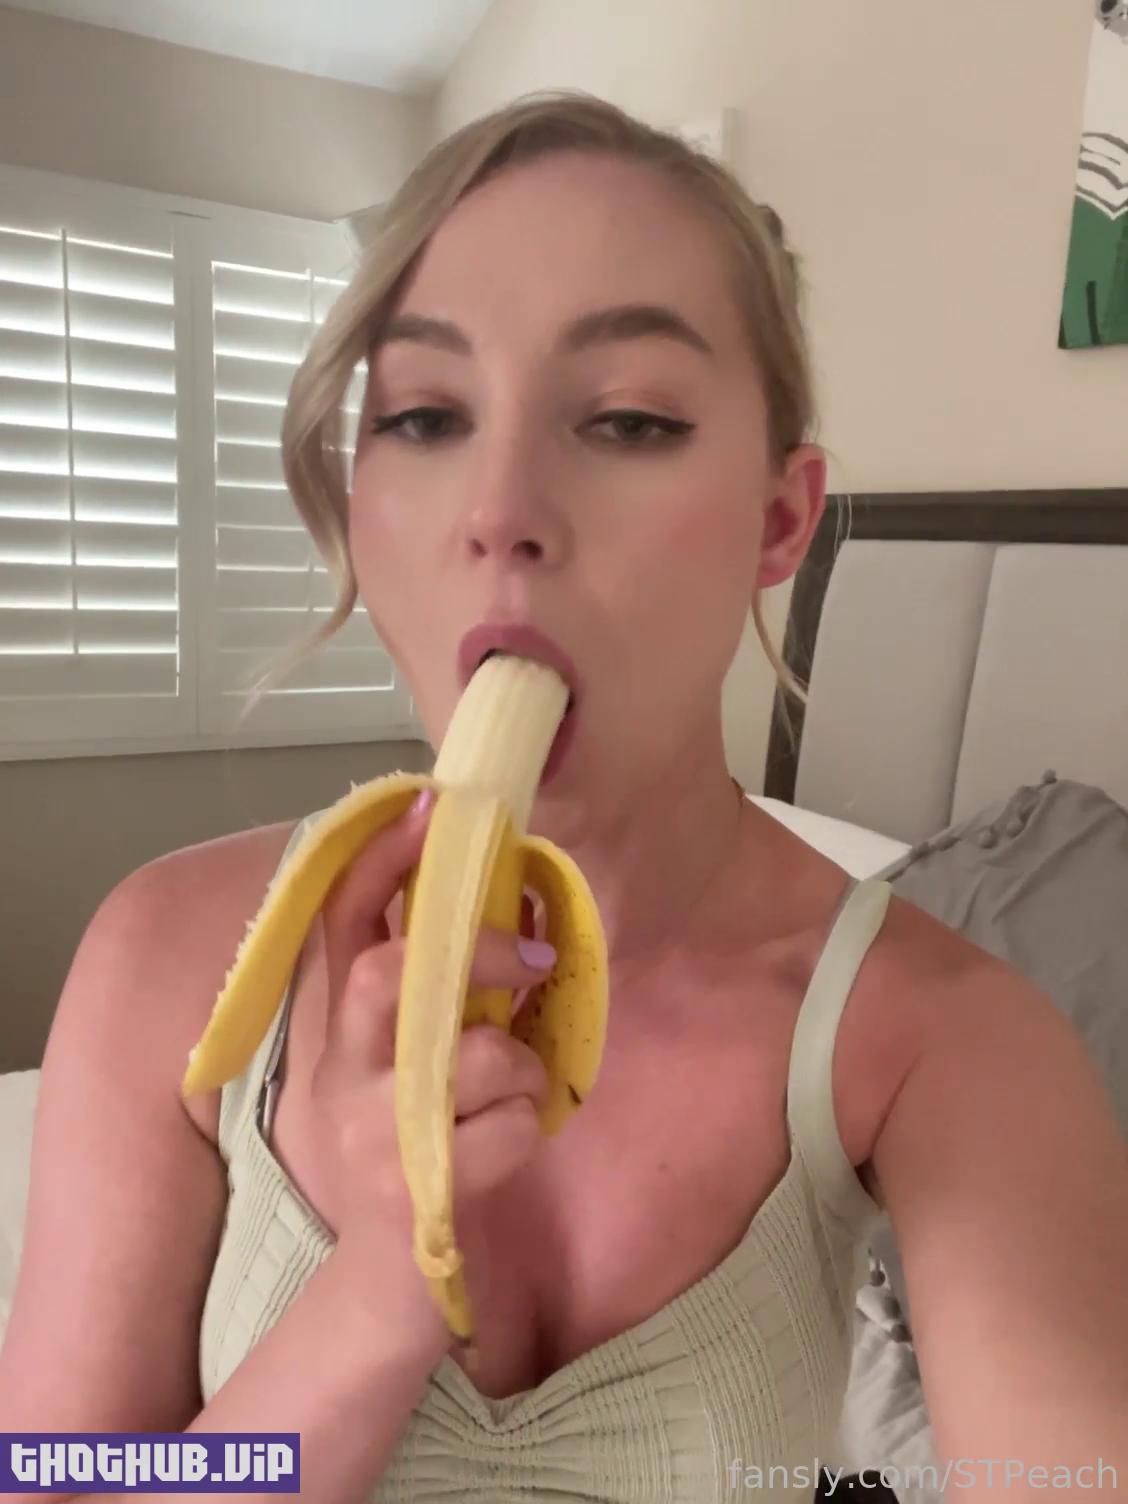 1662686550 764 STPeach Banana Deepthroat Fansly Video Leaked